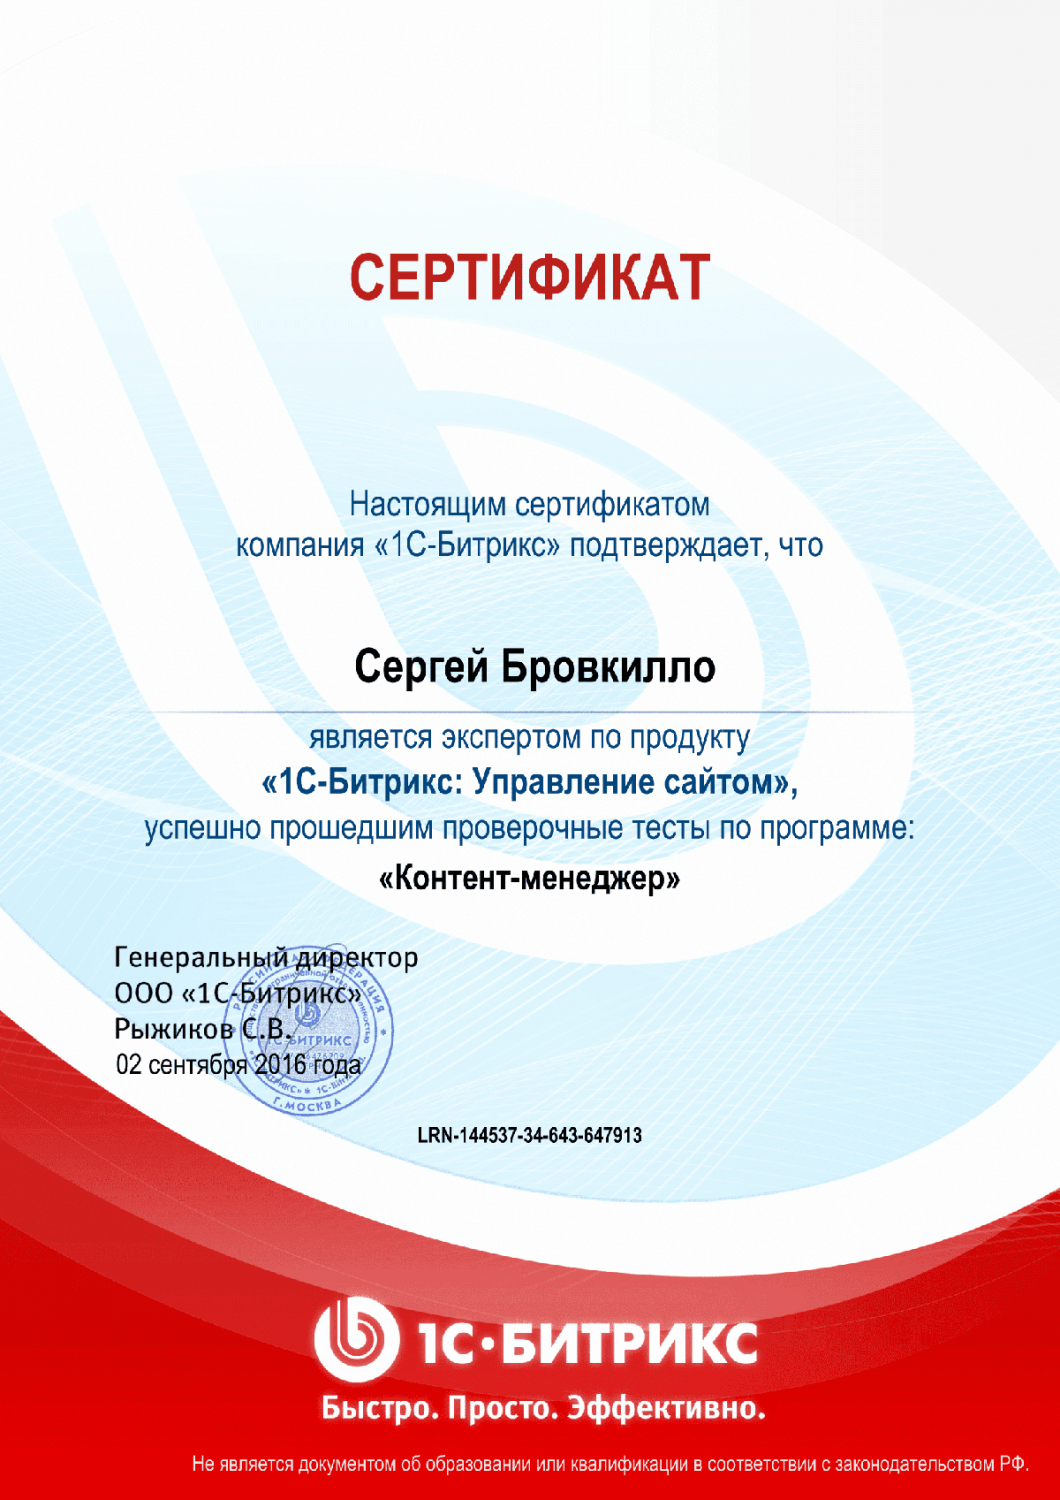 Сертификат эксперта по программе "Контент-менеджер"" в Тамбова